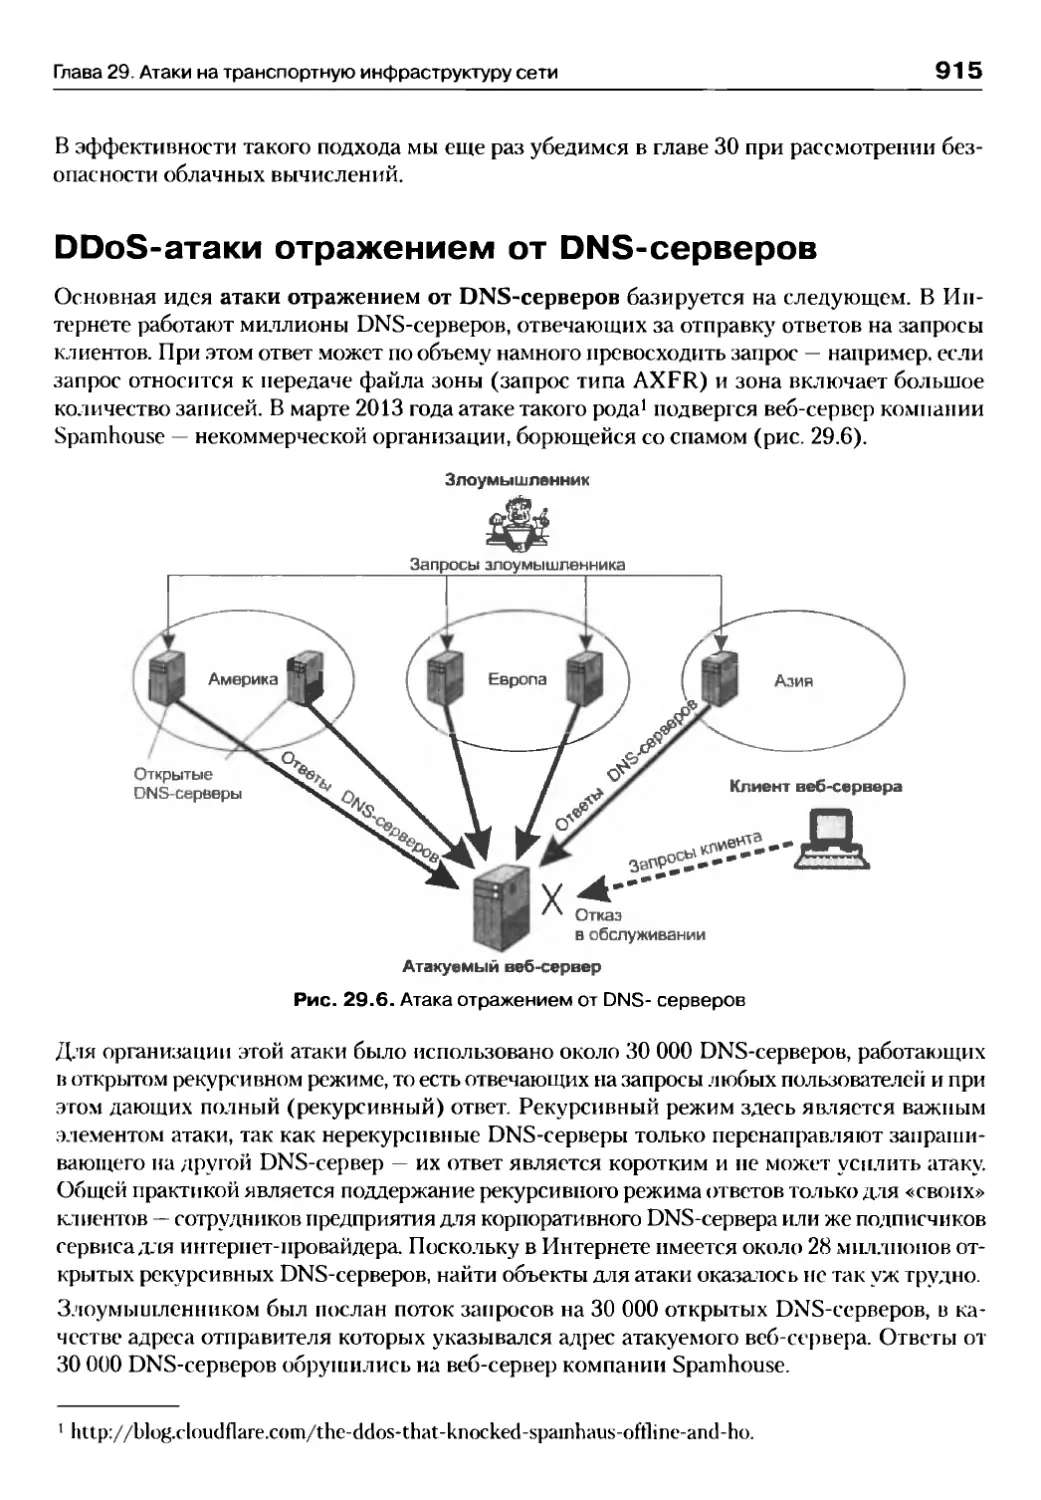 DDoS-атаки отражением от DNS-серверов